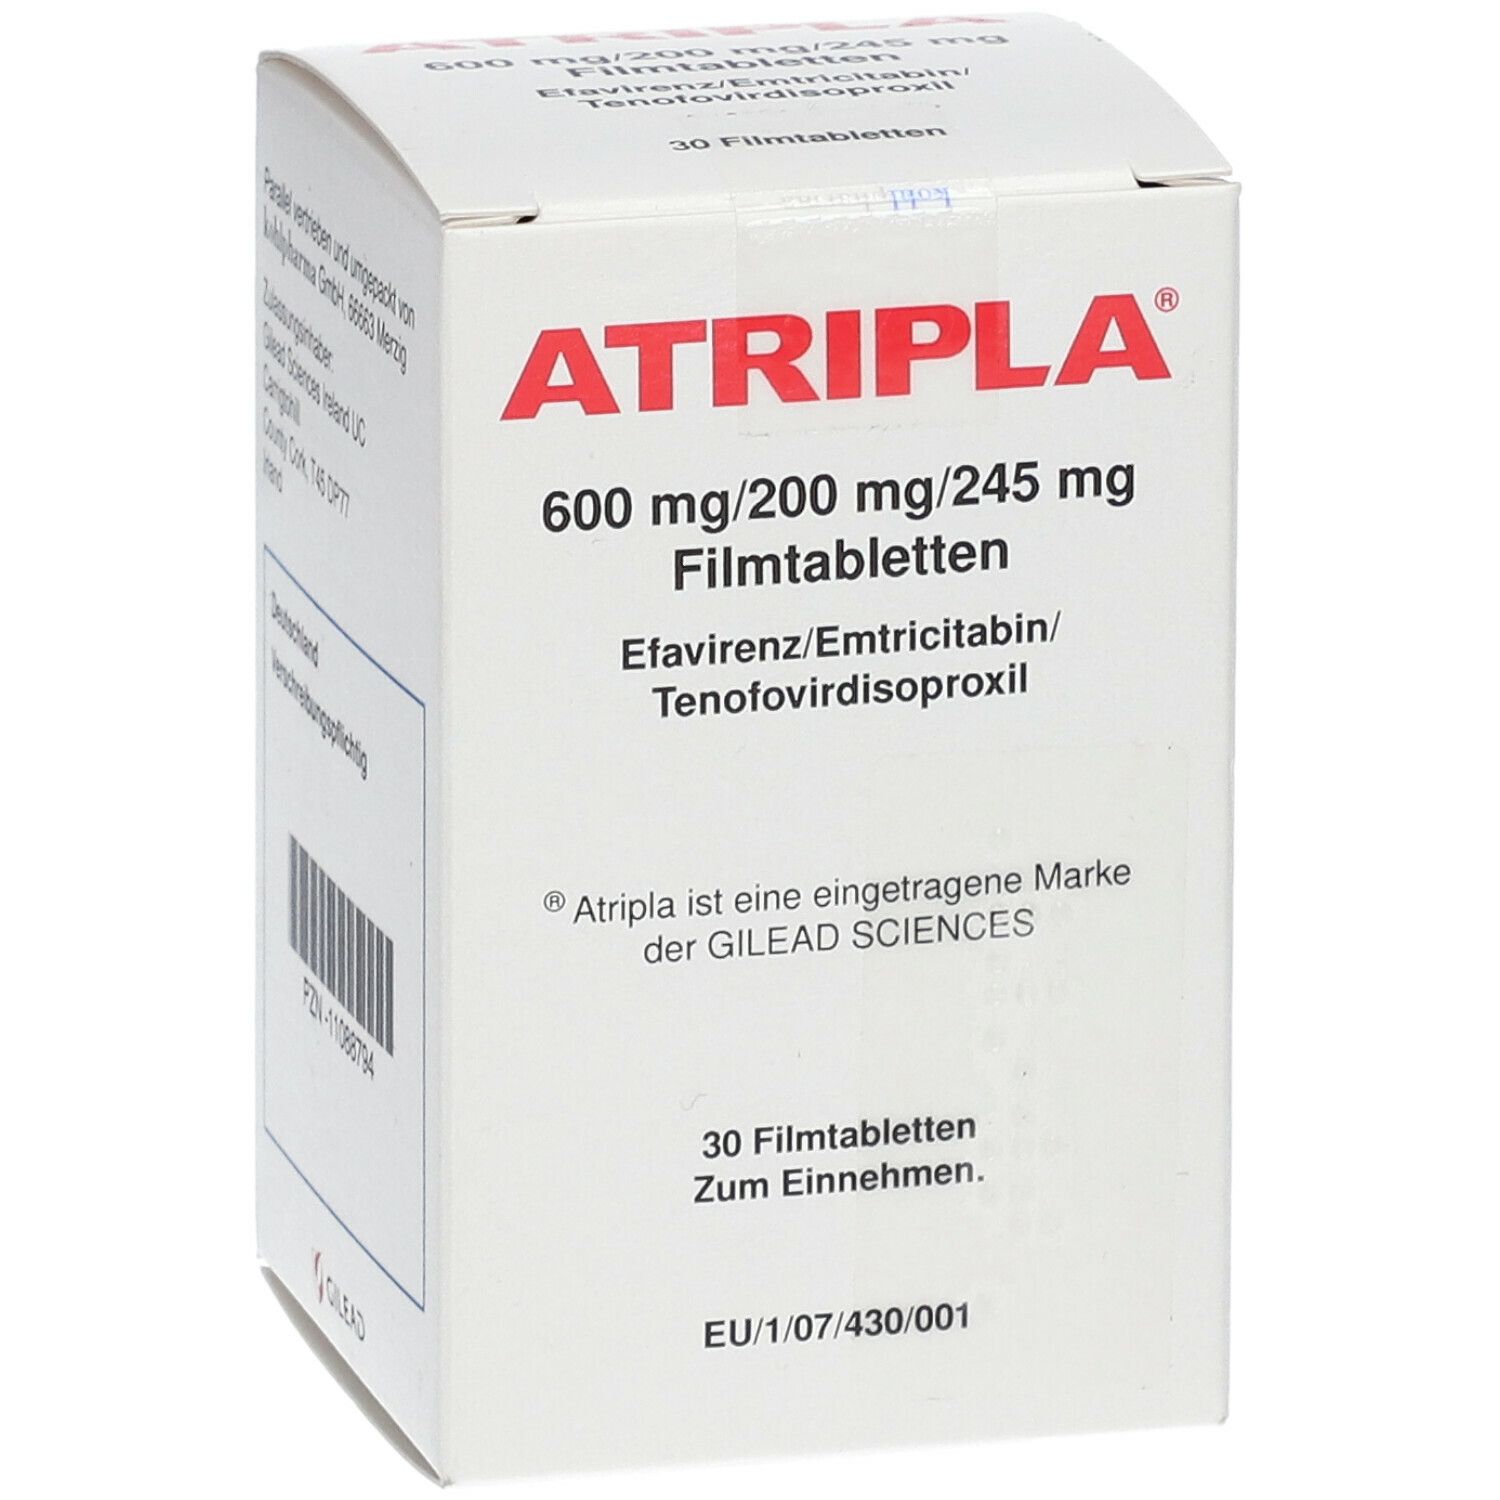 Atripla 600 mg/200 mg/245 mg